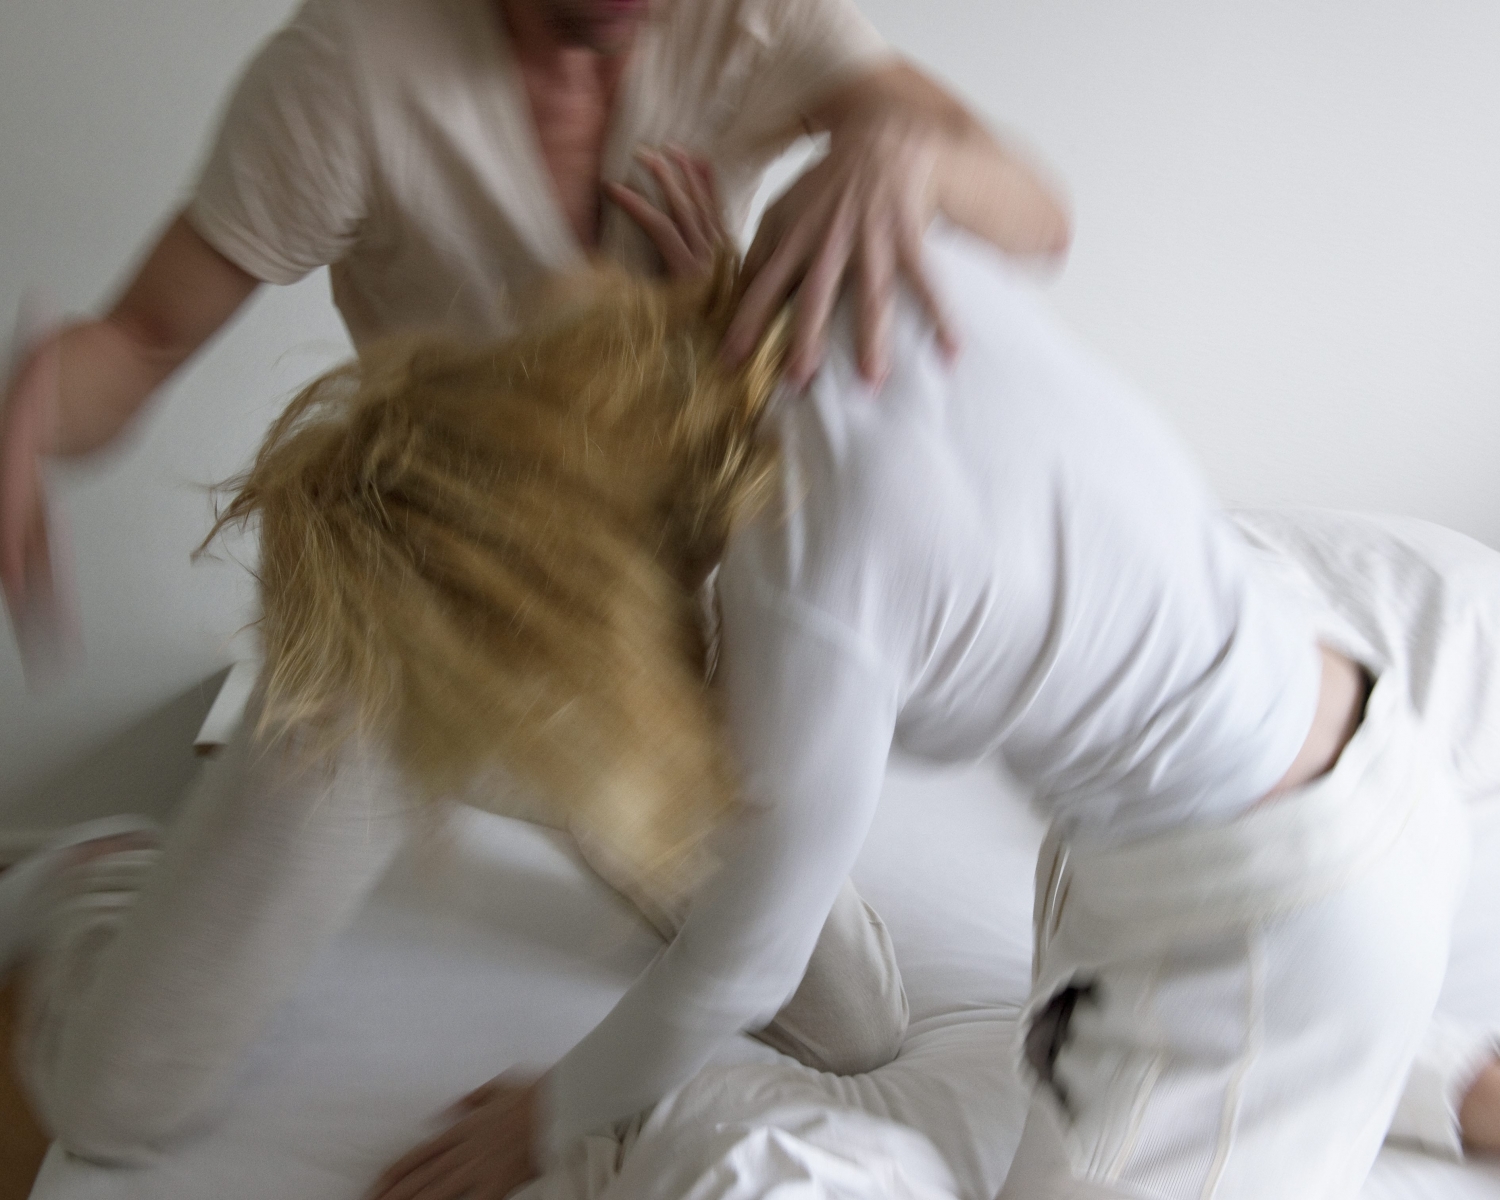 Dans trois quarts des cas, ce sont des femmes qui sont les victimes des violences domestiques.